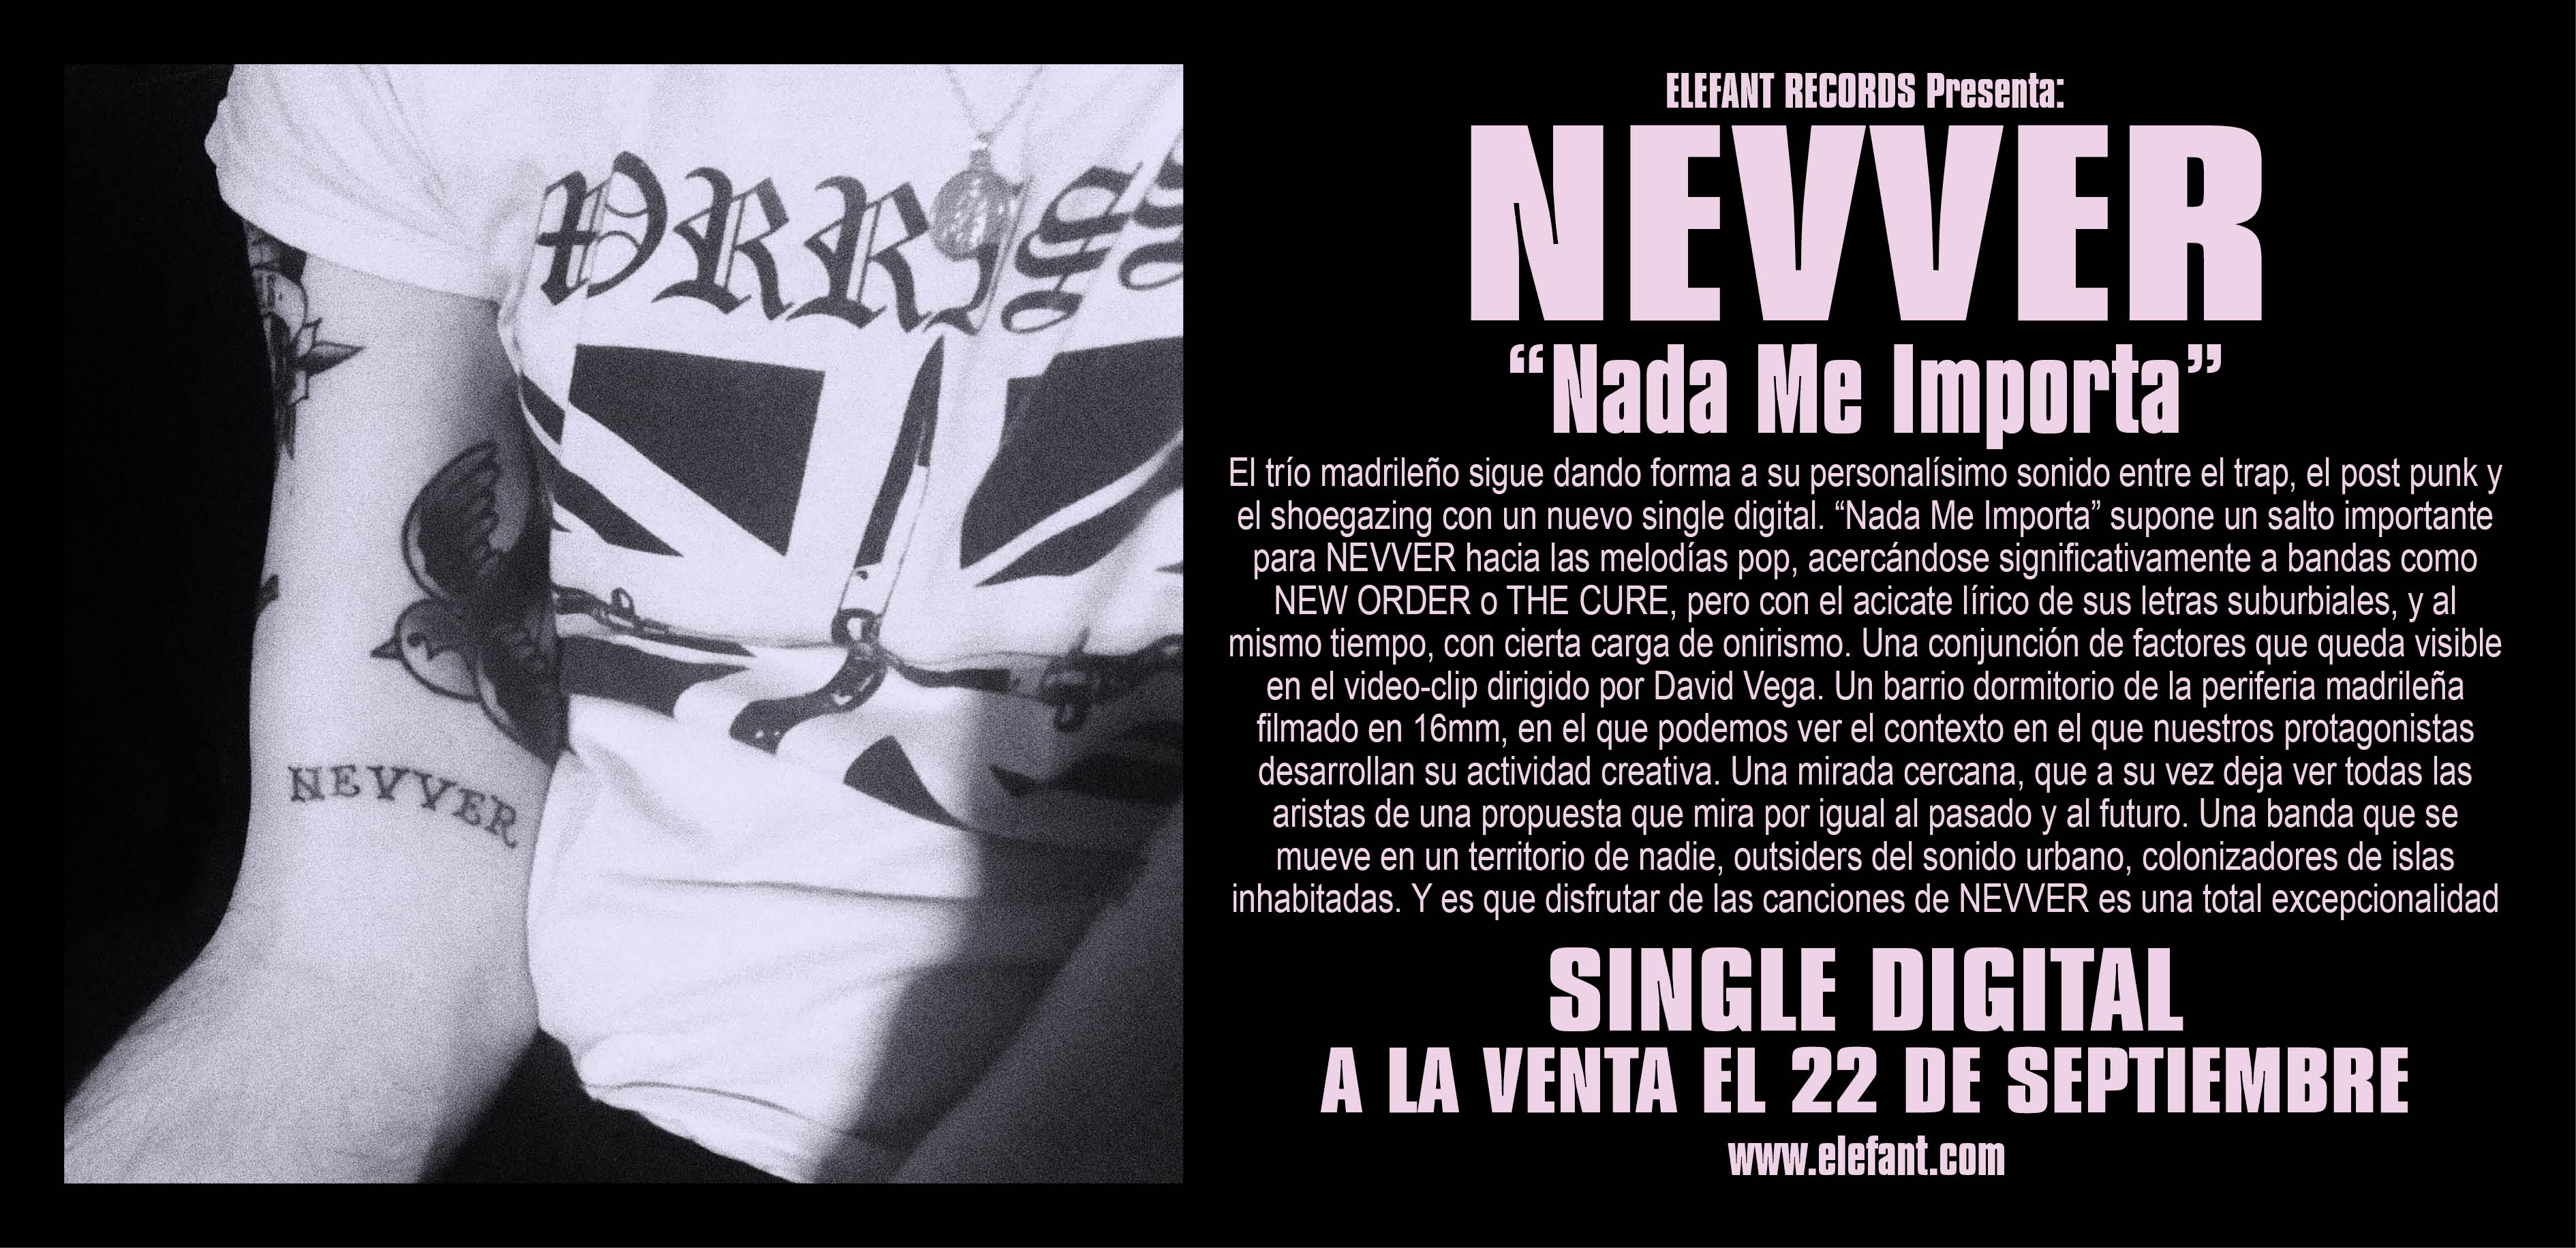 Nevver "Nada Me Importa" Digital Single